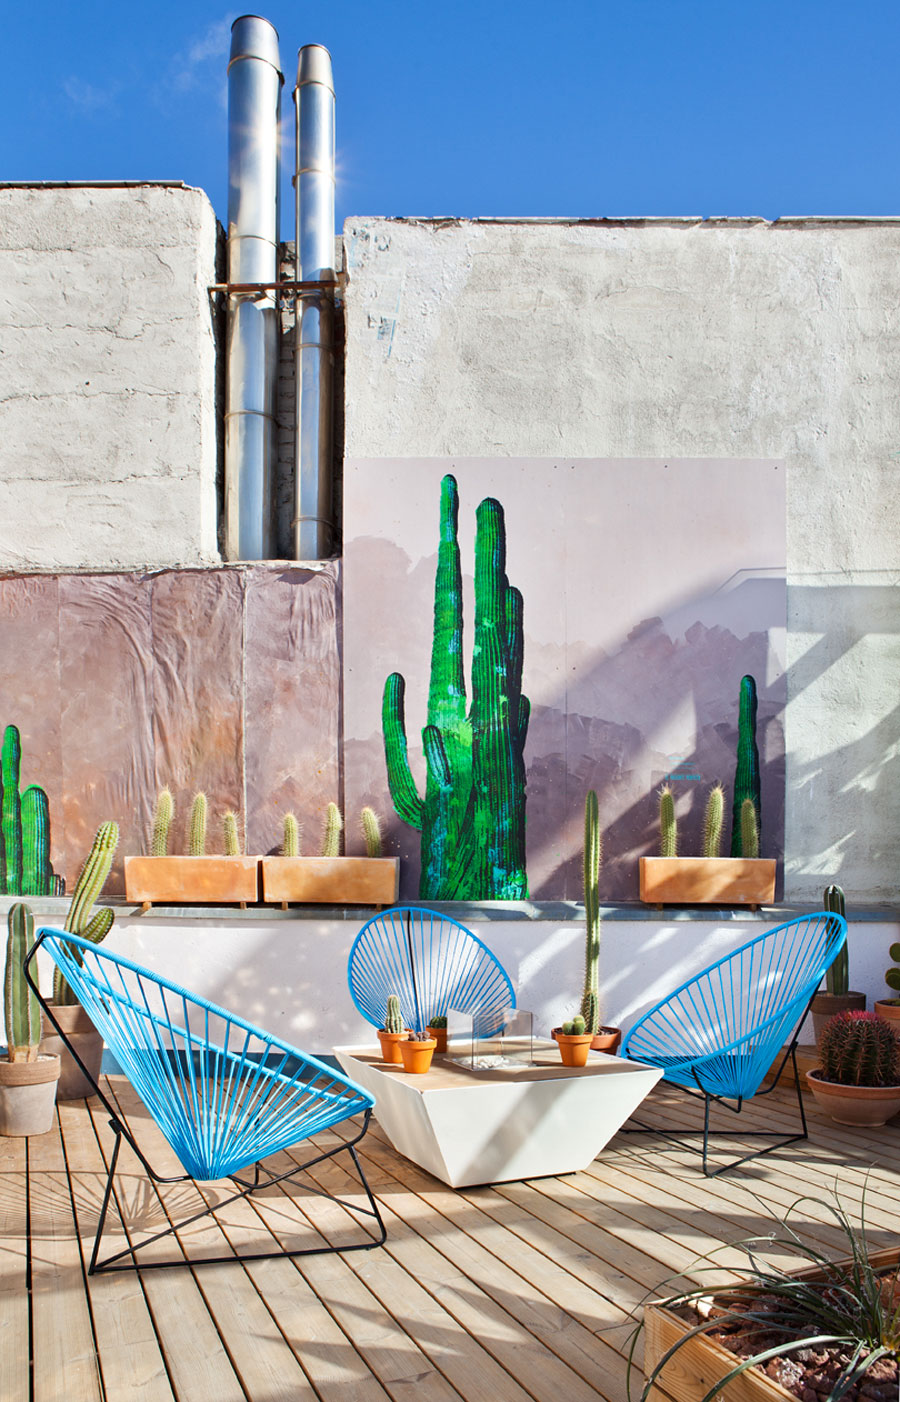 para seguir el verano las sillas Acapulco, los cactus y las láminas de cactus ayudan en la decoración